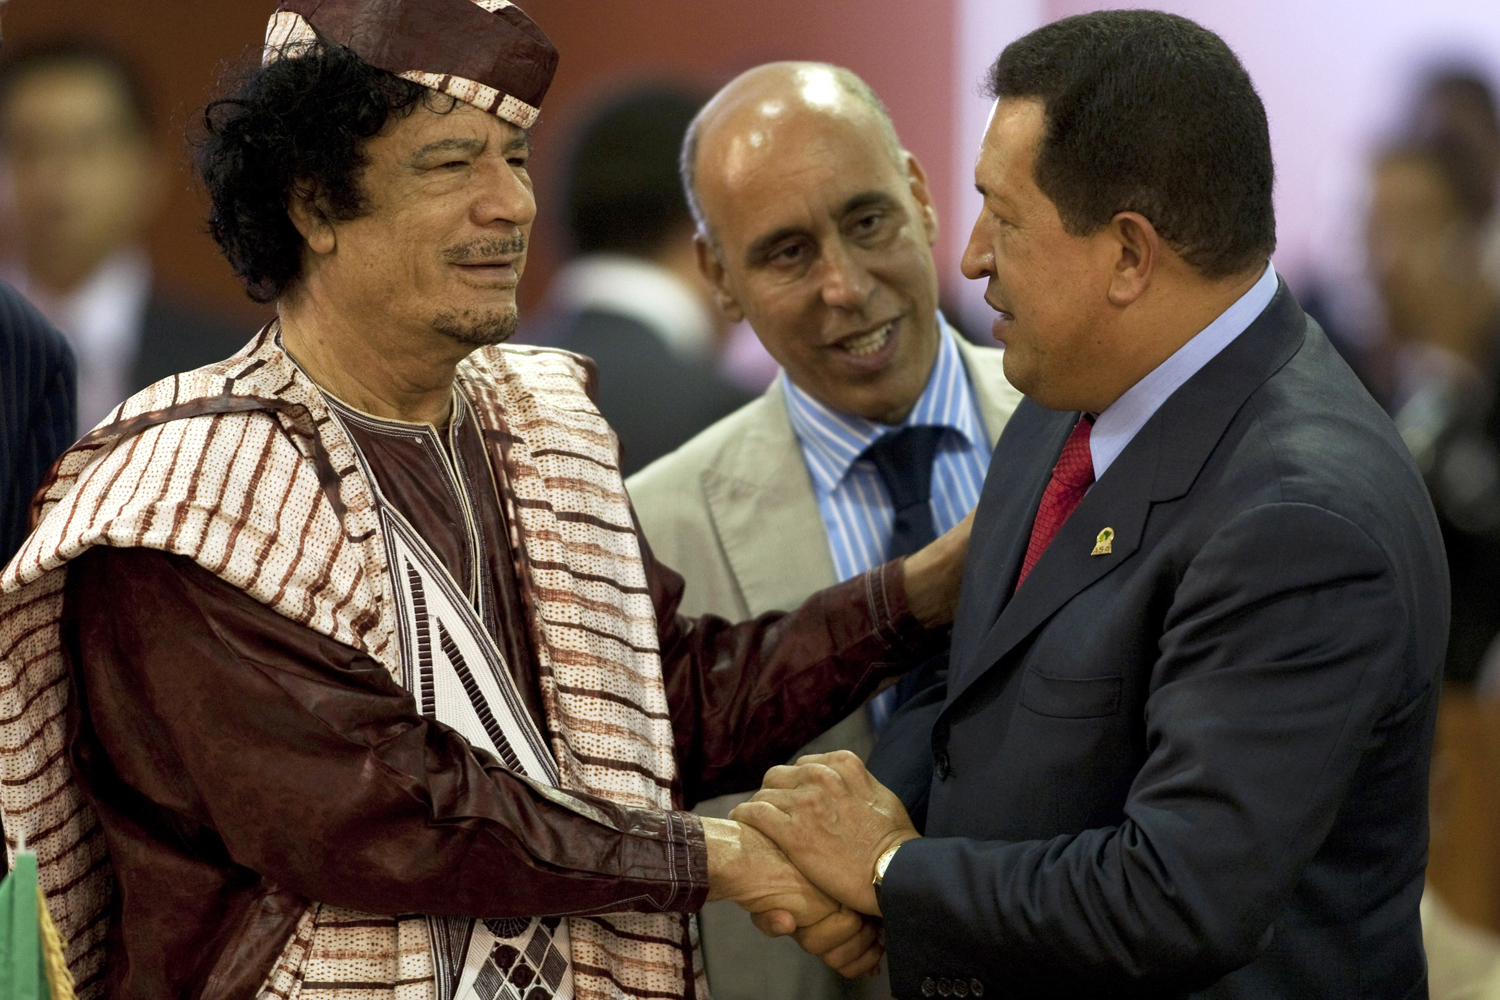 RÃ©sultat de recherche d'images pour "Hugo Chavez africa"